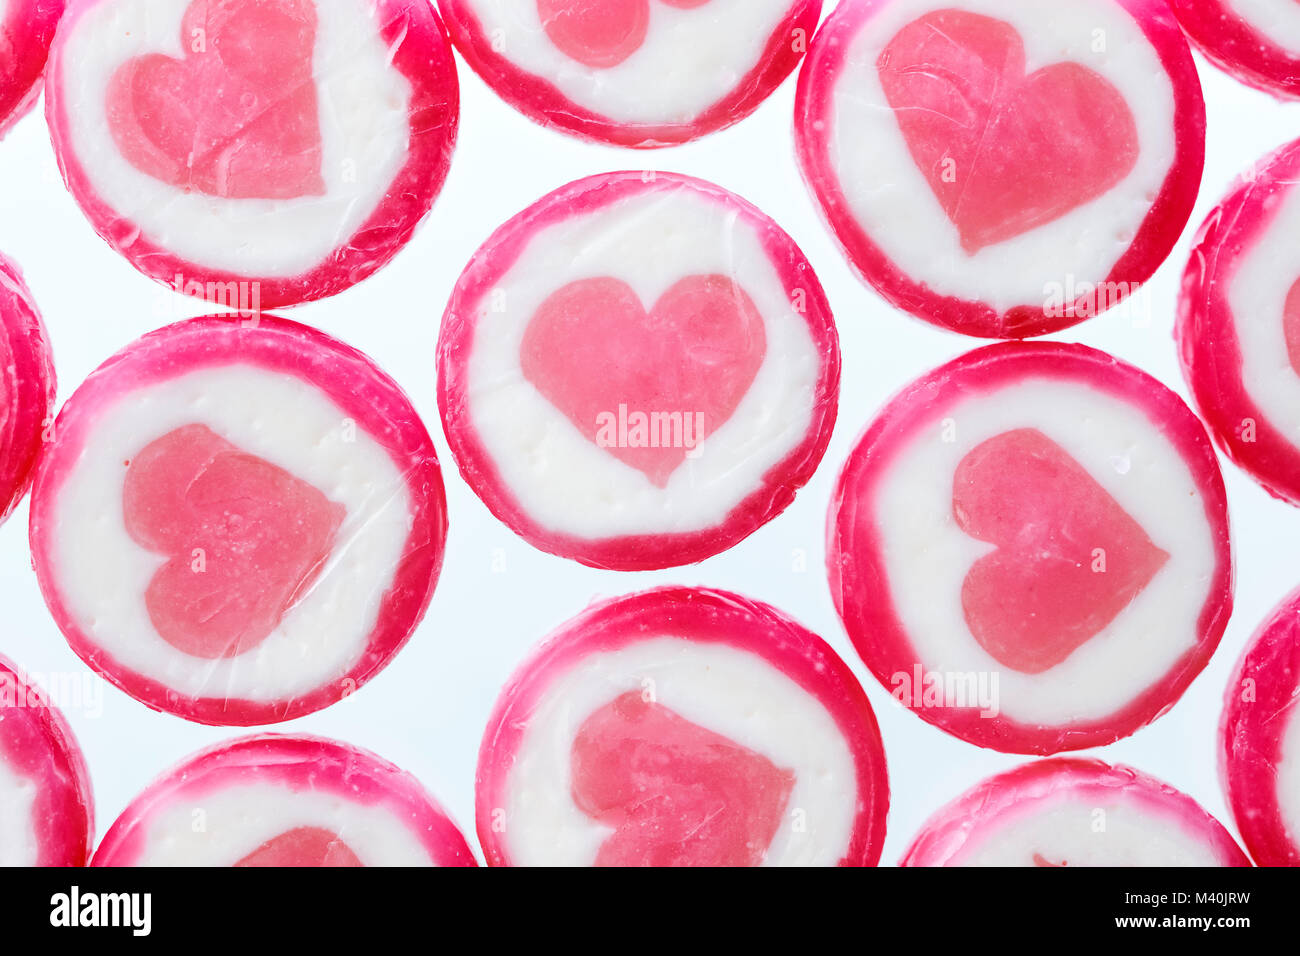 Candies with heart, Bonbons mit Herzen Stock Photo